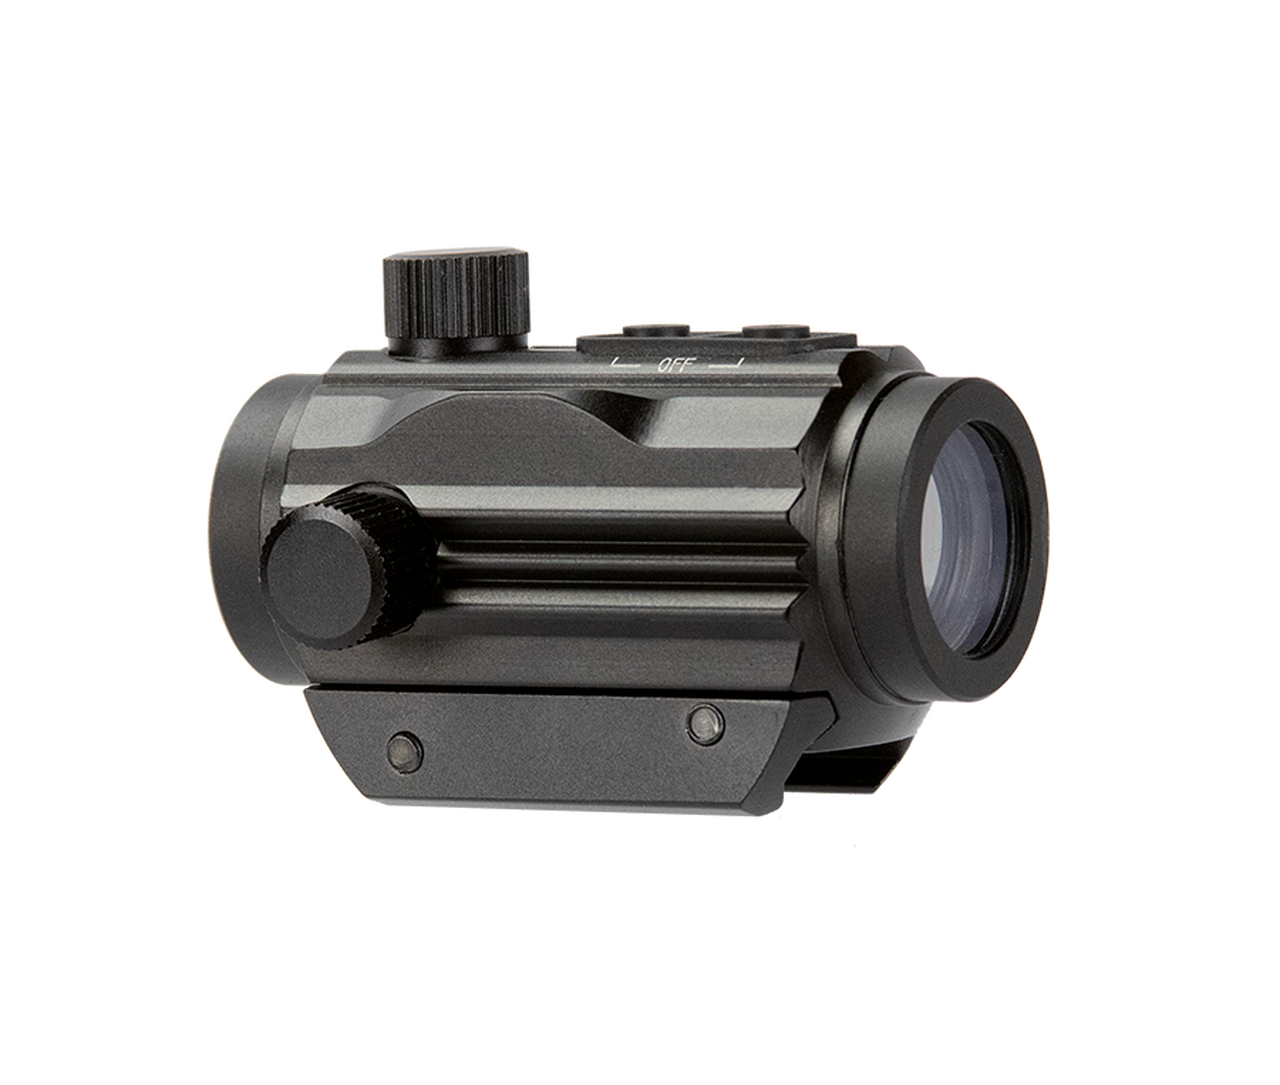 Aim Sports 1X20mm Dual-Illuminated Micro Dot Sight